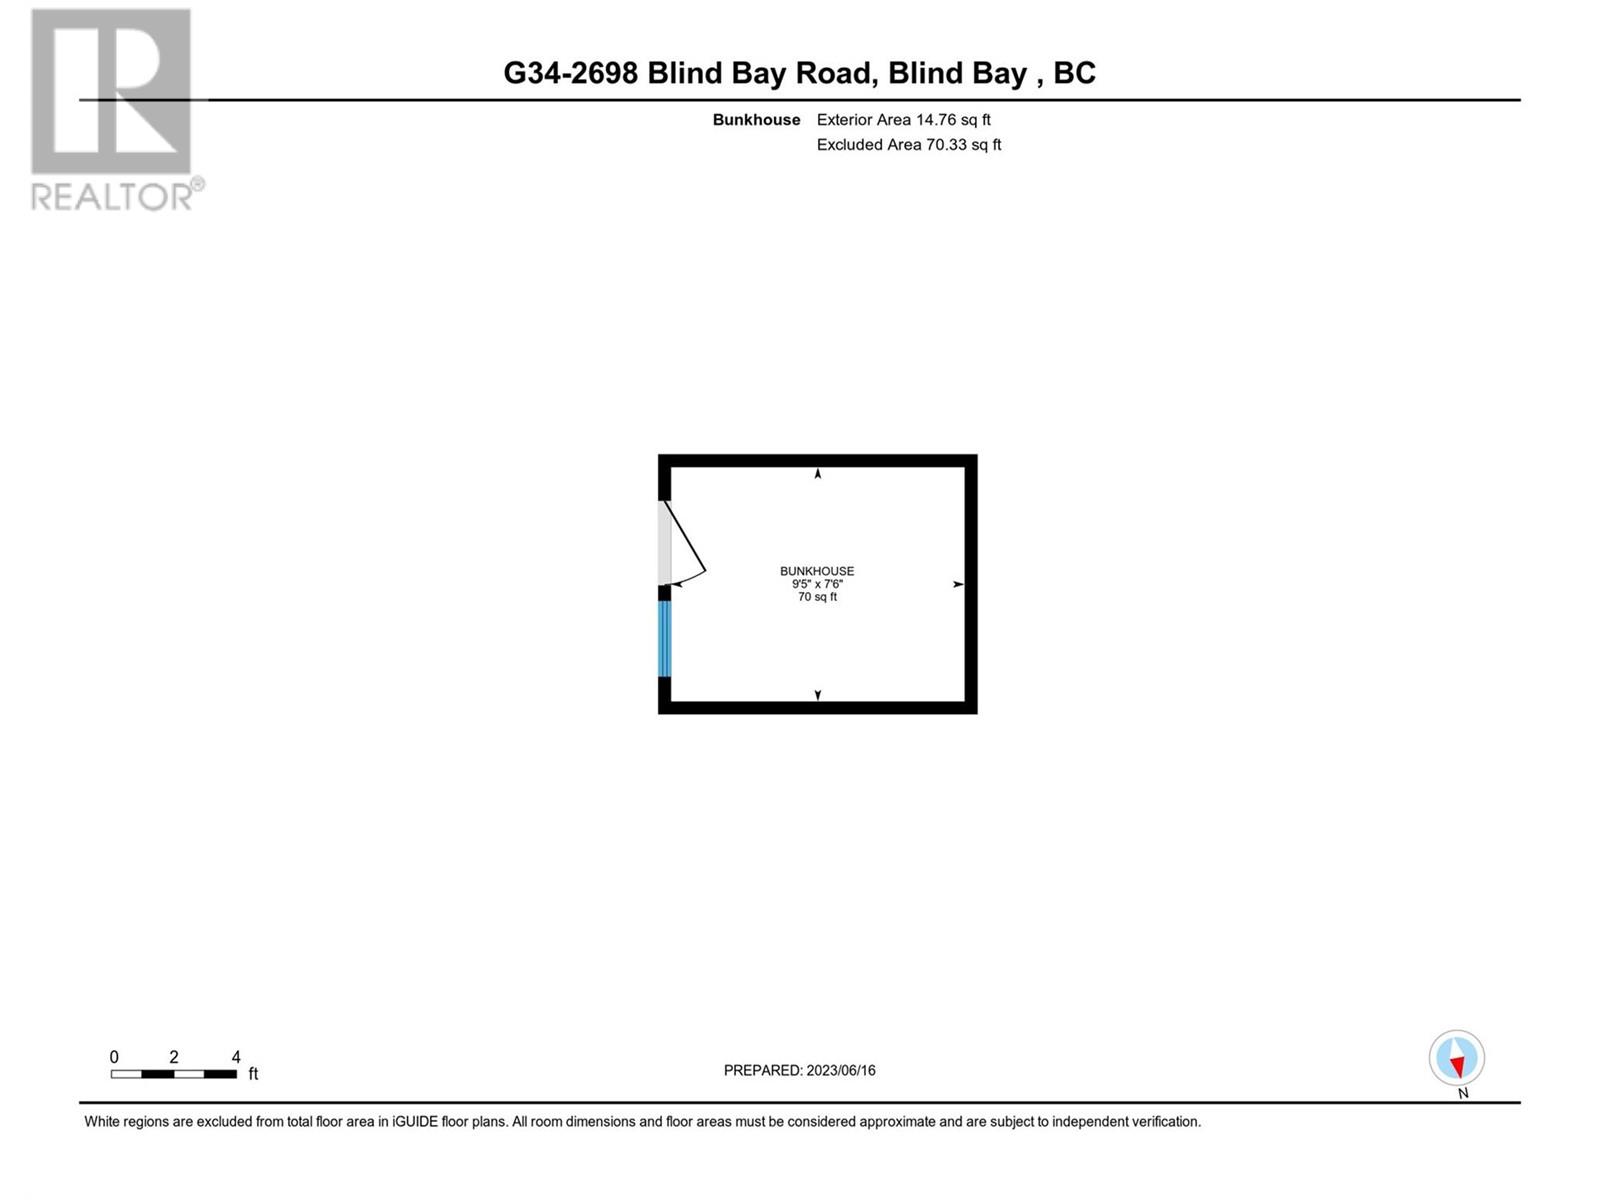 2698 Blind Bay Road Unit# G34 Blind Bay